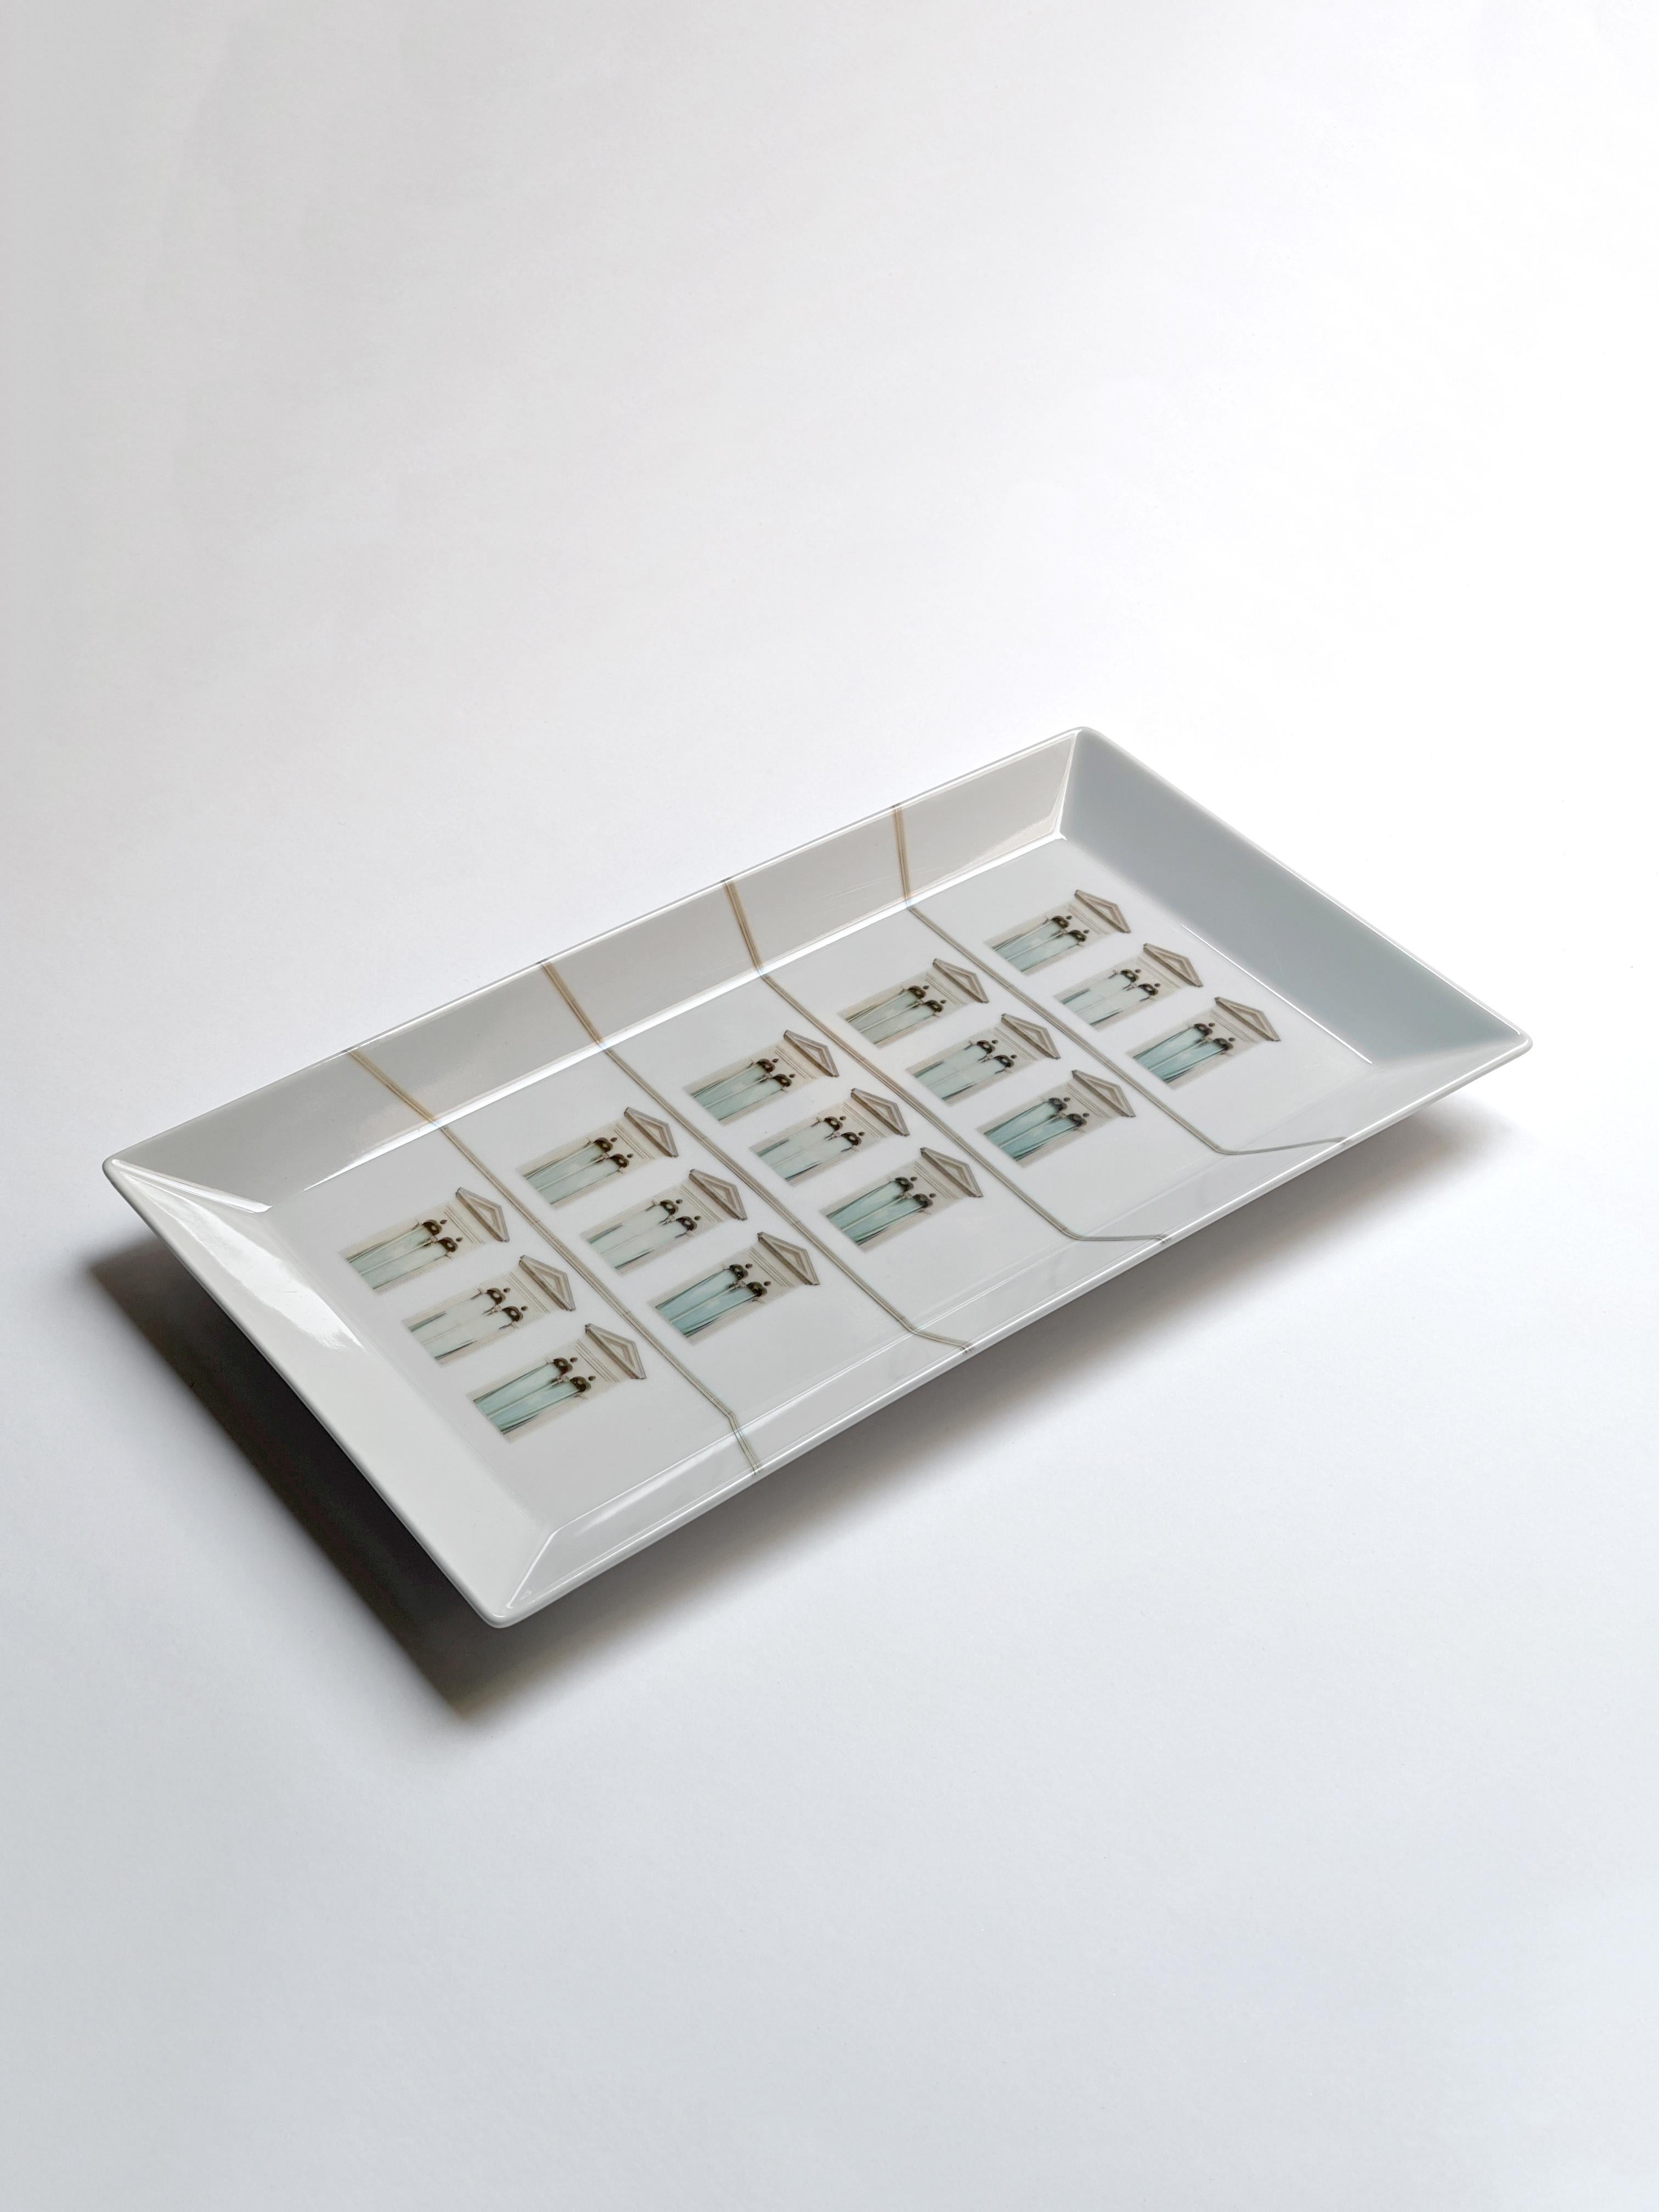 La Finestra sul Cortile est une collection de centres de table et de vide-poches aux formes simples et carrées sur lesquels sont placées différentes façades de bâtiments. La gamme des décors est large : des fenêtres sans fin des premiers gratte-ciel